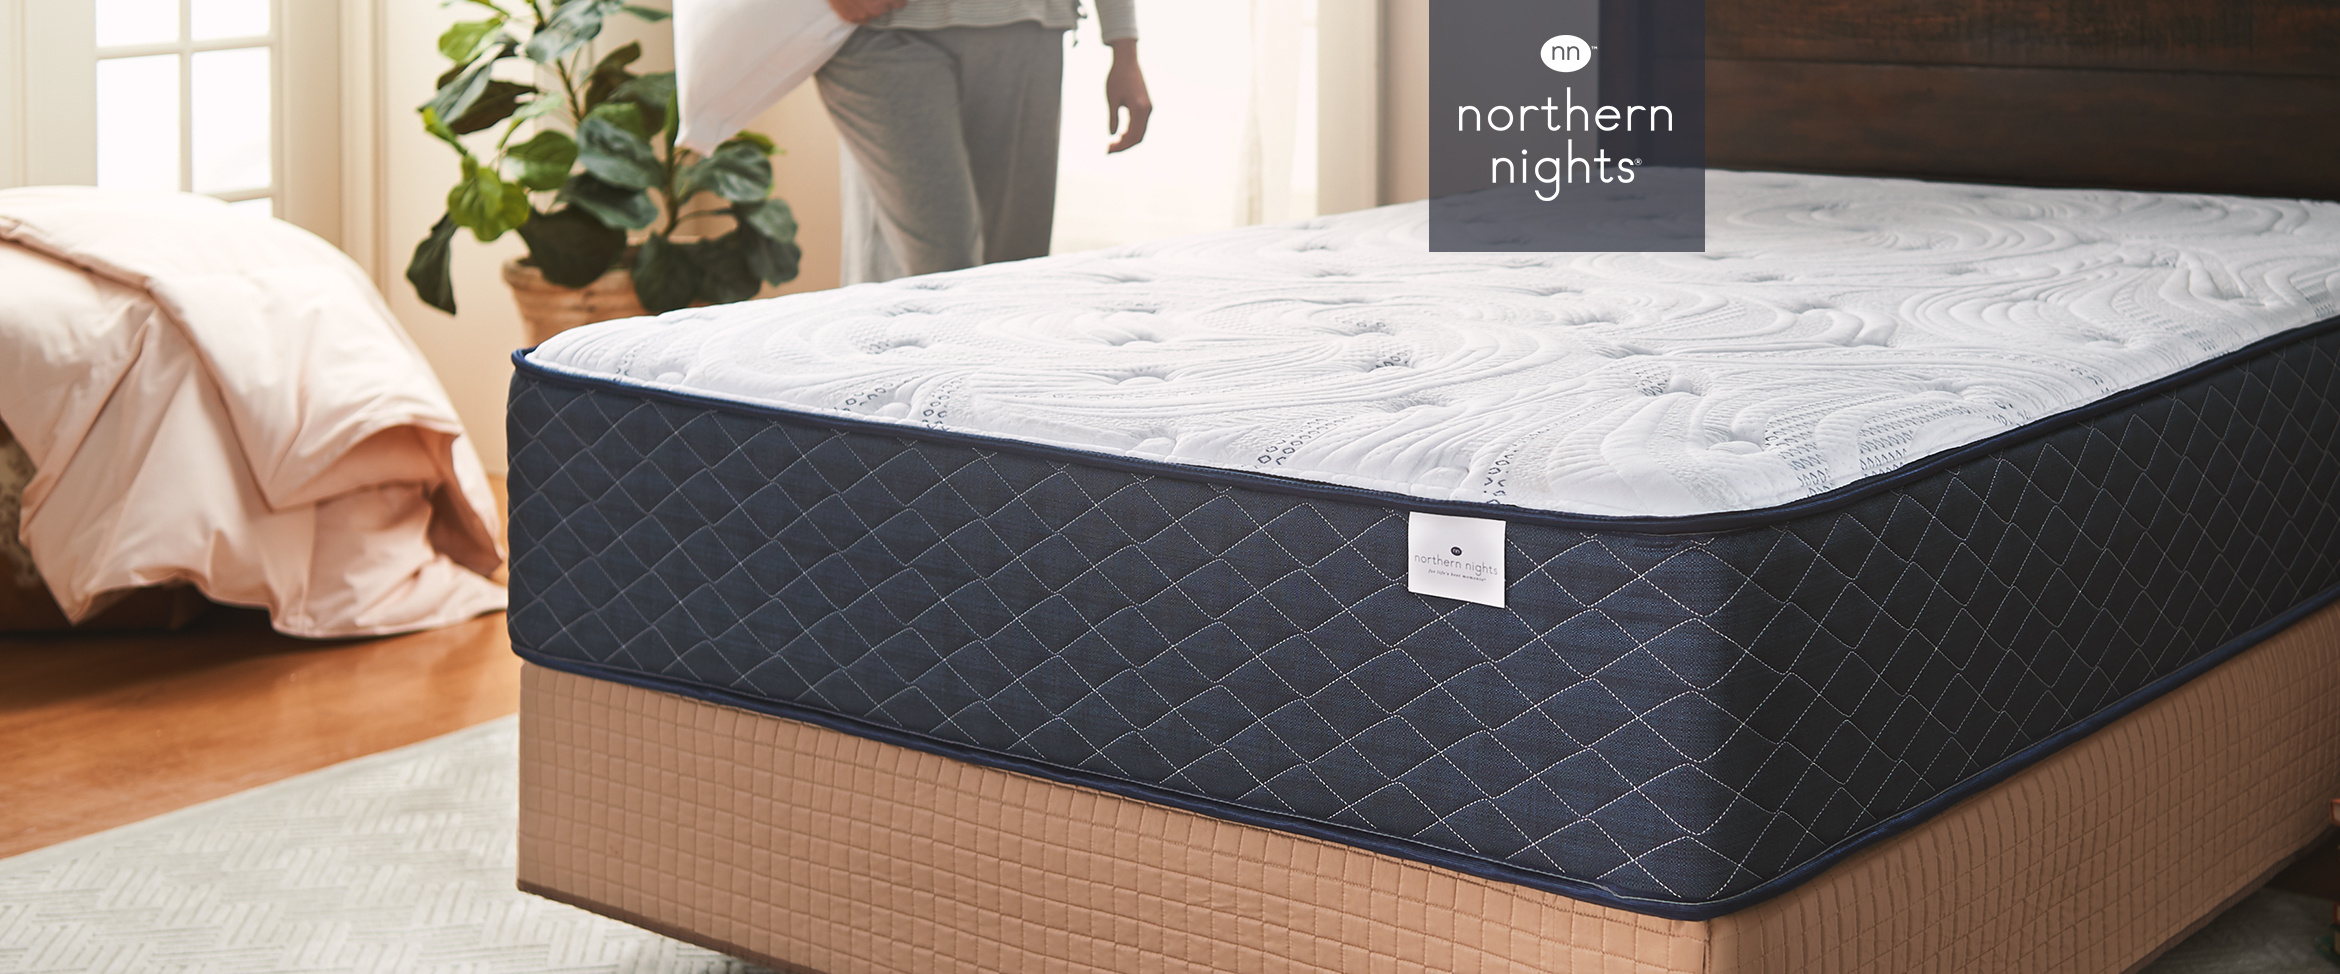 northern nights 11 inch dream mattress